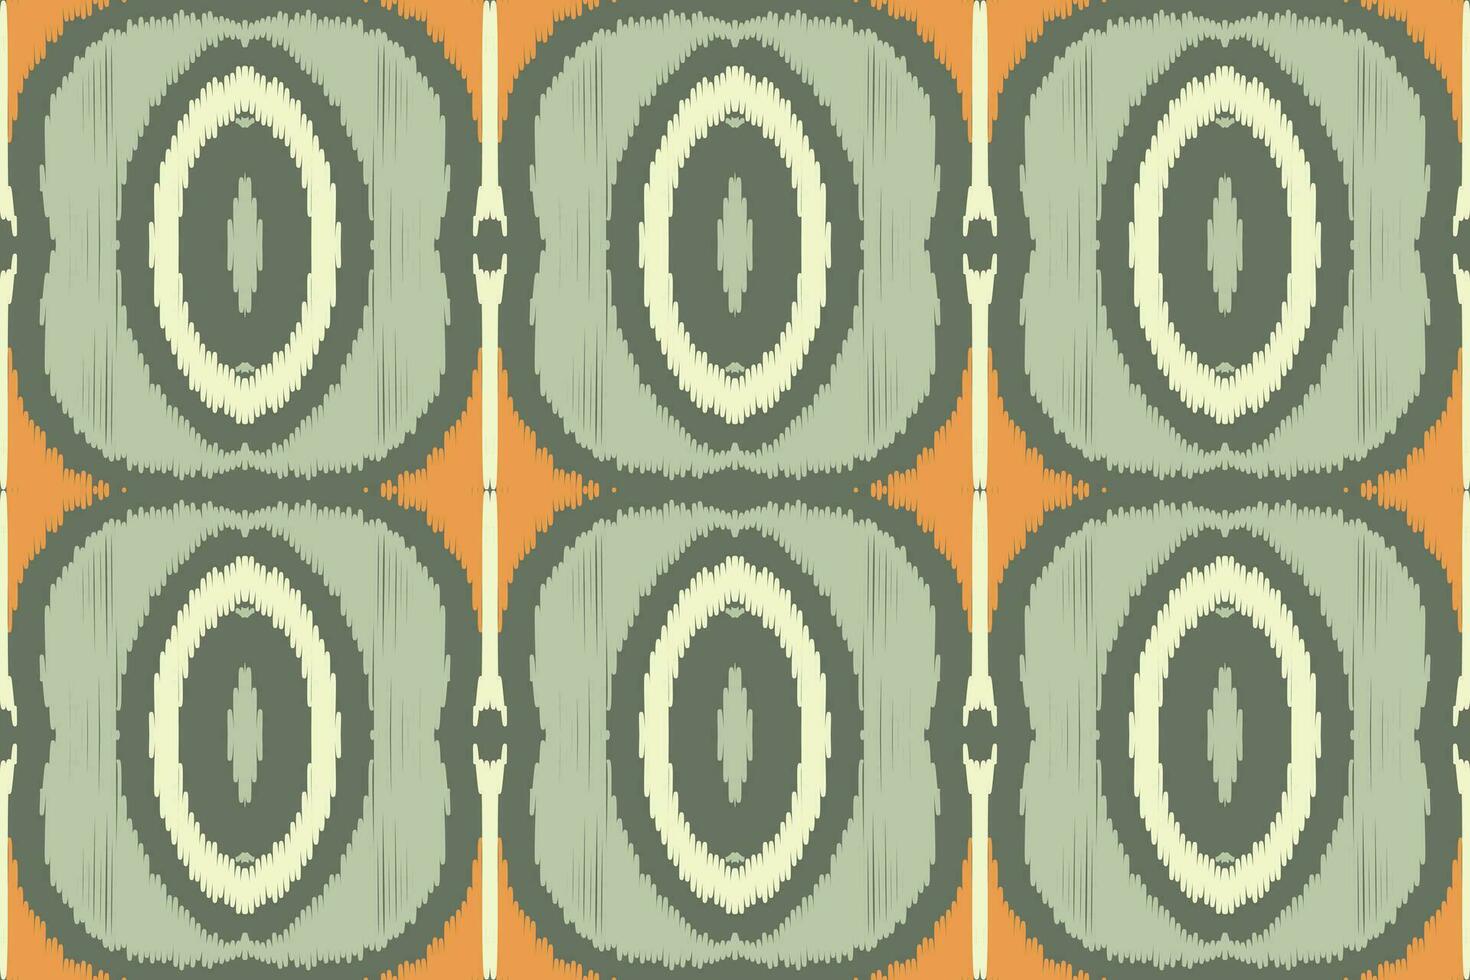 motief ikat paisley borduurwerk achtergrond. ikat patronen meetkundig etnisch oosters patroon traditioneel. ikat aztec stijl abstract ontwerp voor afdrukken textuur,stof,sari,sari,tapijt. vector